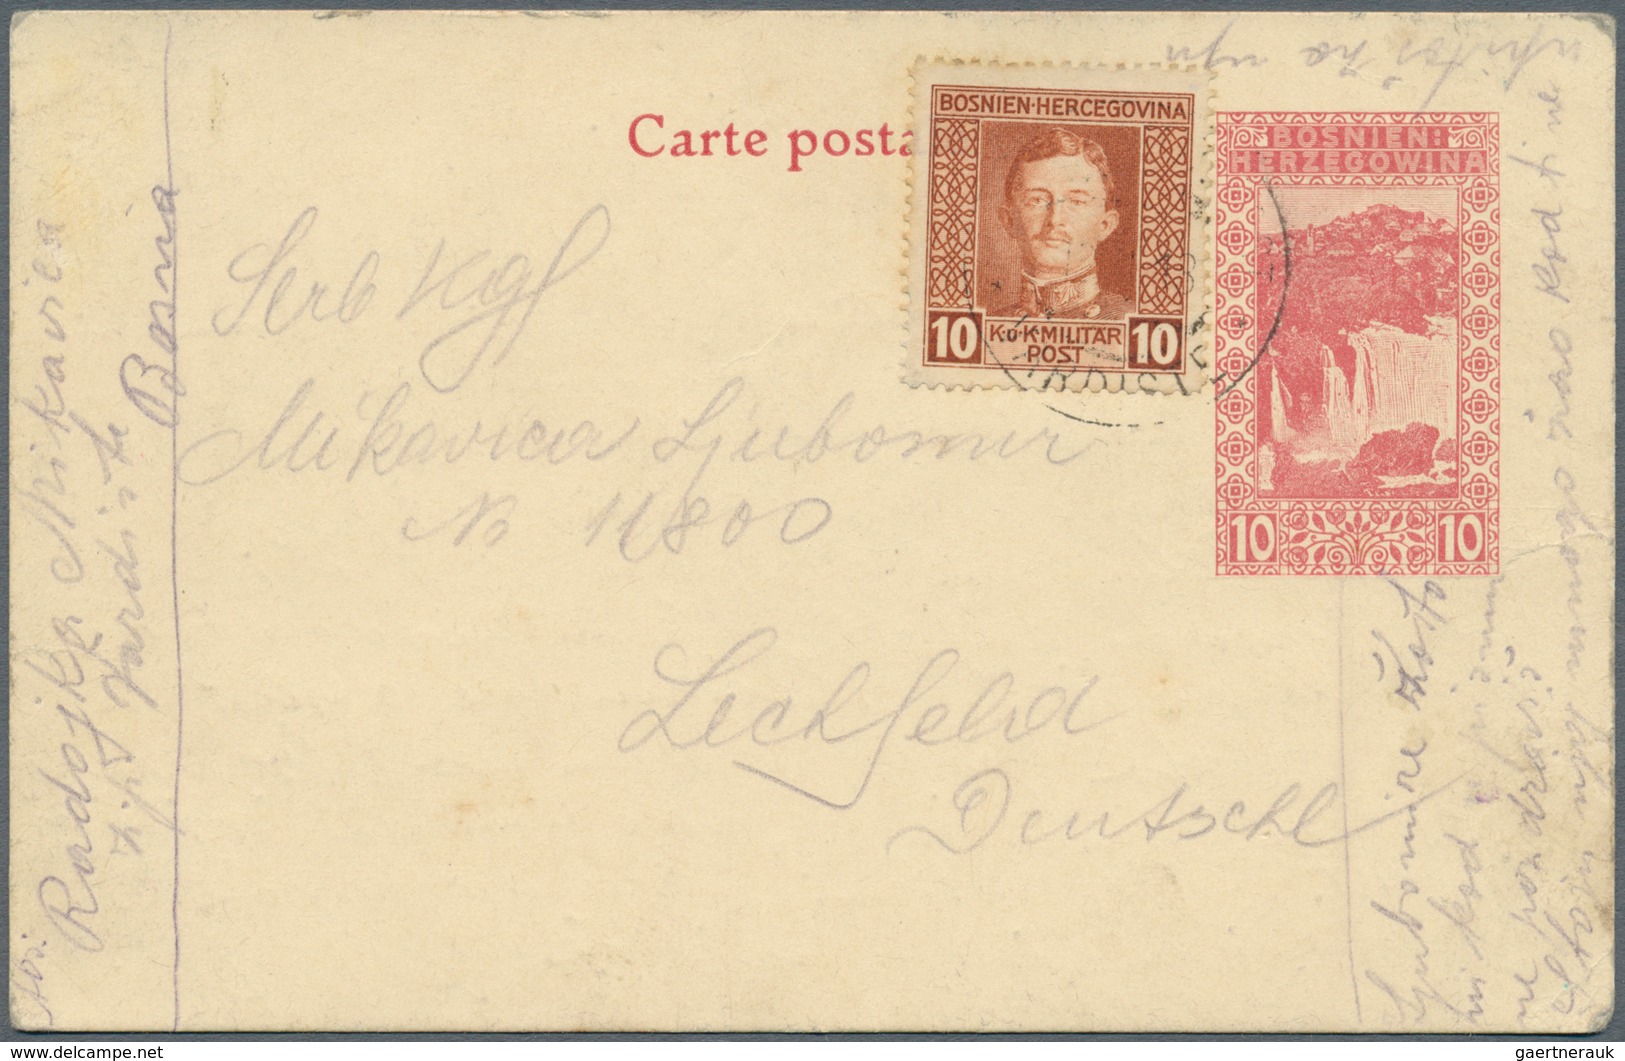 31891 Feldpost 1. Weltkrieg: 1914/1918, vielfältiger Posten von ca. 120 Feldpostbriefen/-karten mit vielen